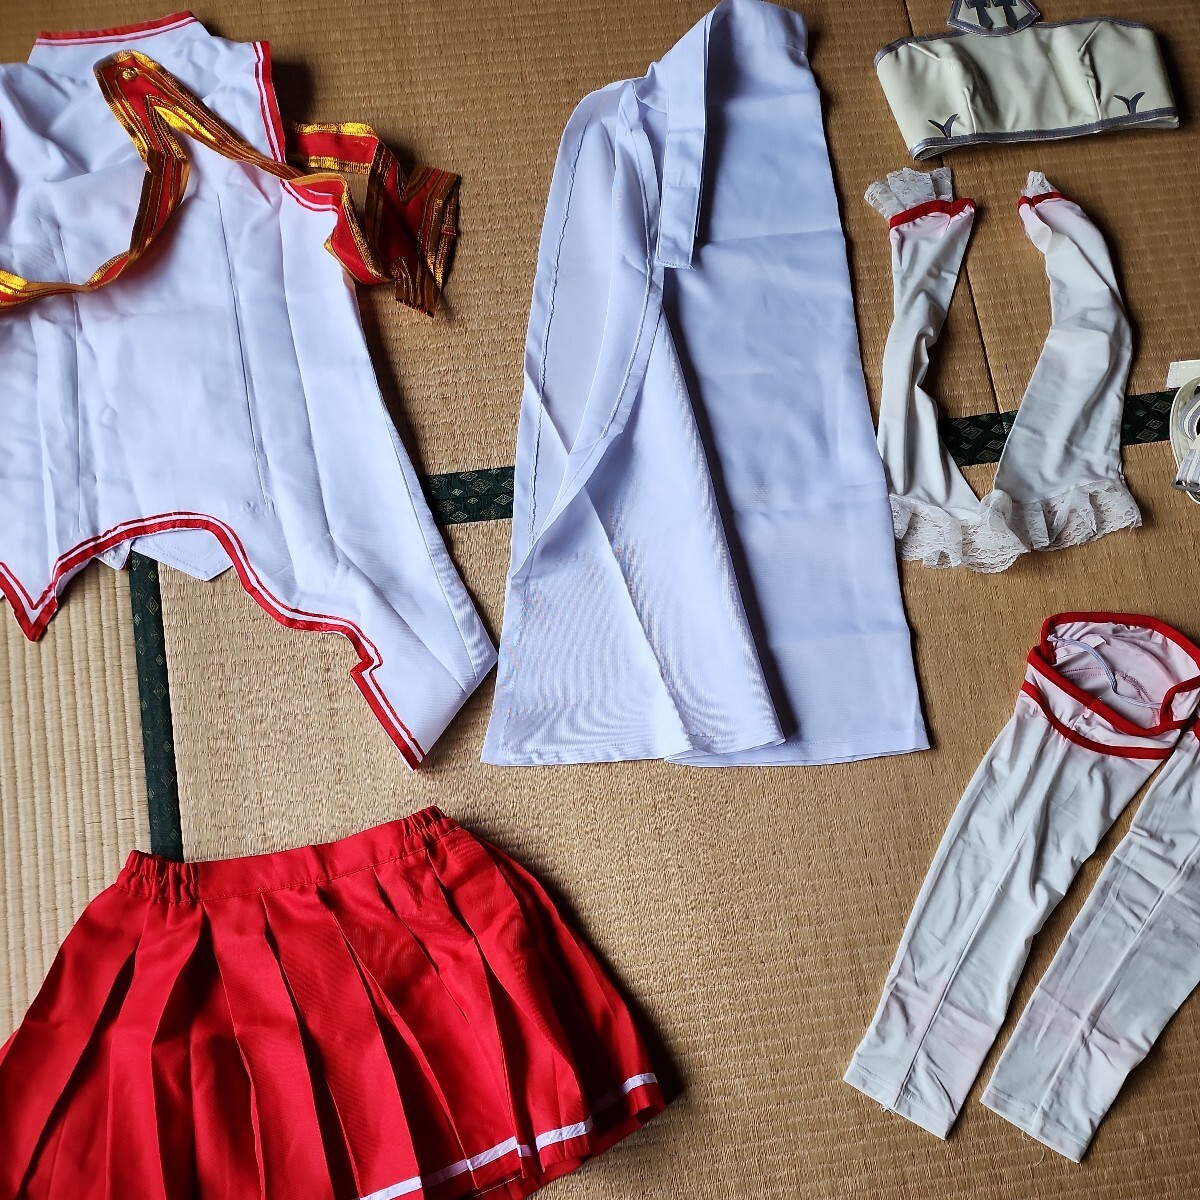  Sword Art * online asna один иен старт костюмированная игра ..( есть перевод. перчатки, носки, средства защиты . красный цвет ... есть )